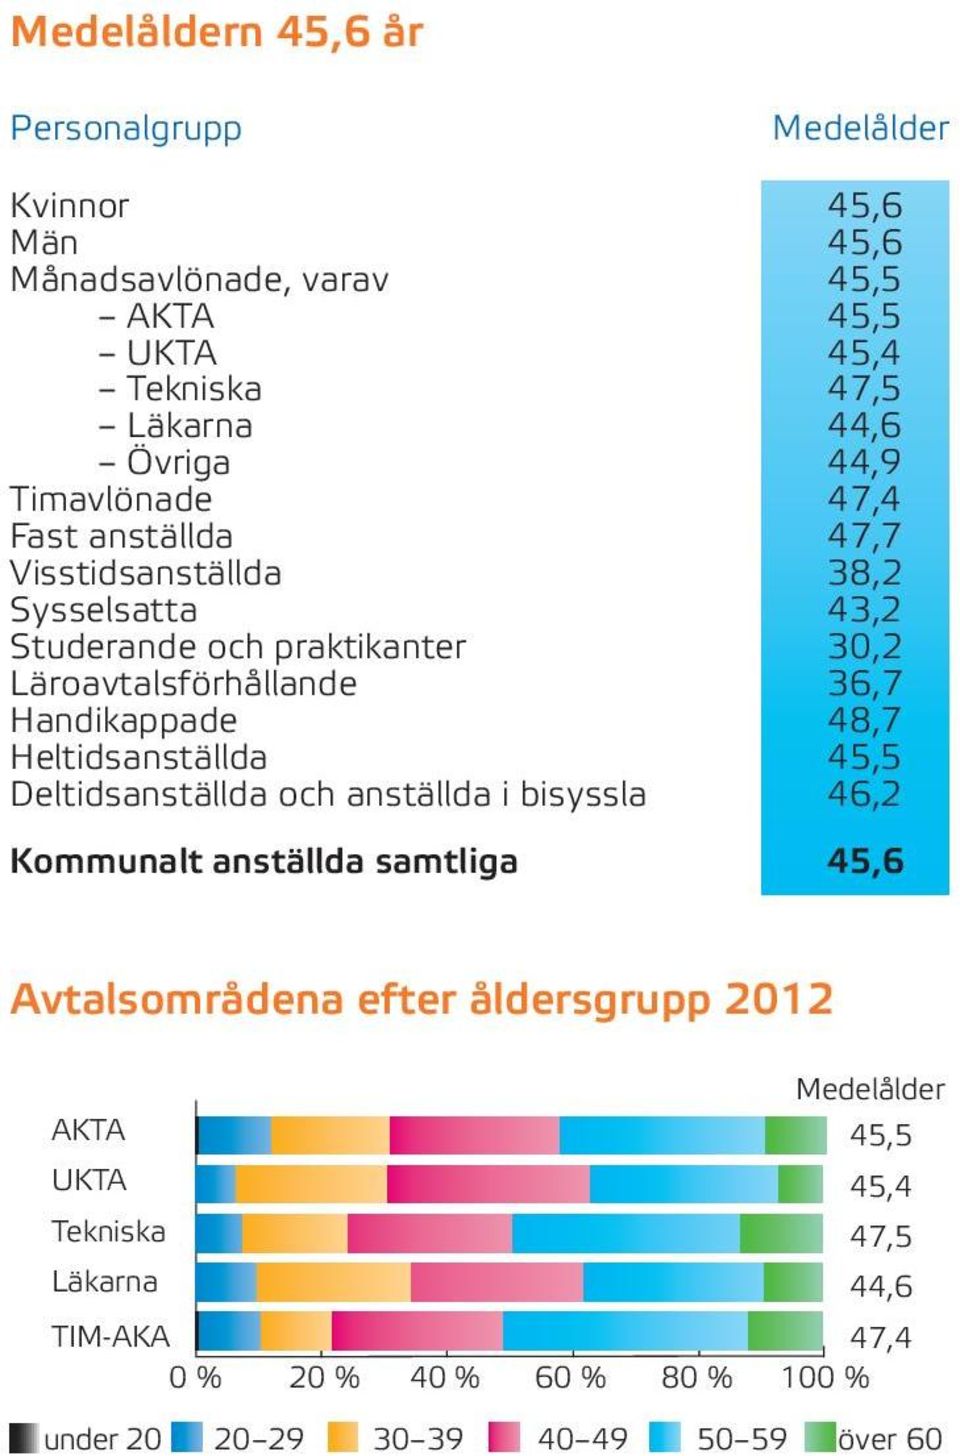 Handikappade 48,7 Heltidsanställda 45,5 Deltidsanställda och anställda i bisyssla 46,2 Kommunalt anställda samtliga 45,6 Avtalsområdena efter